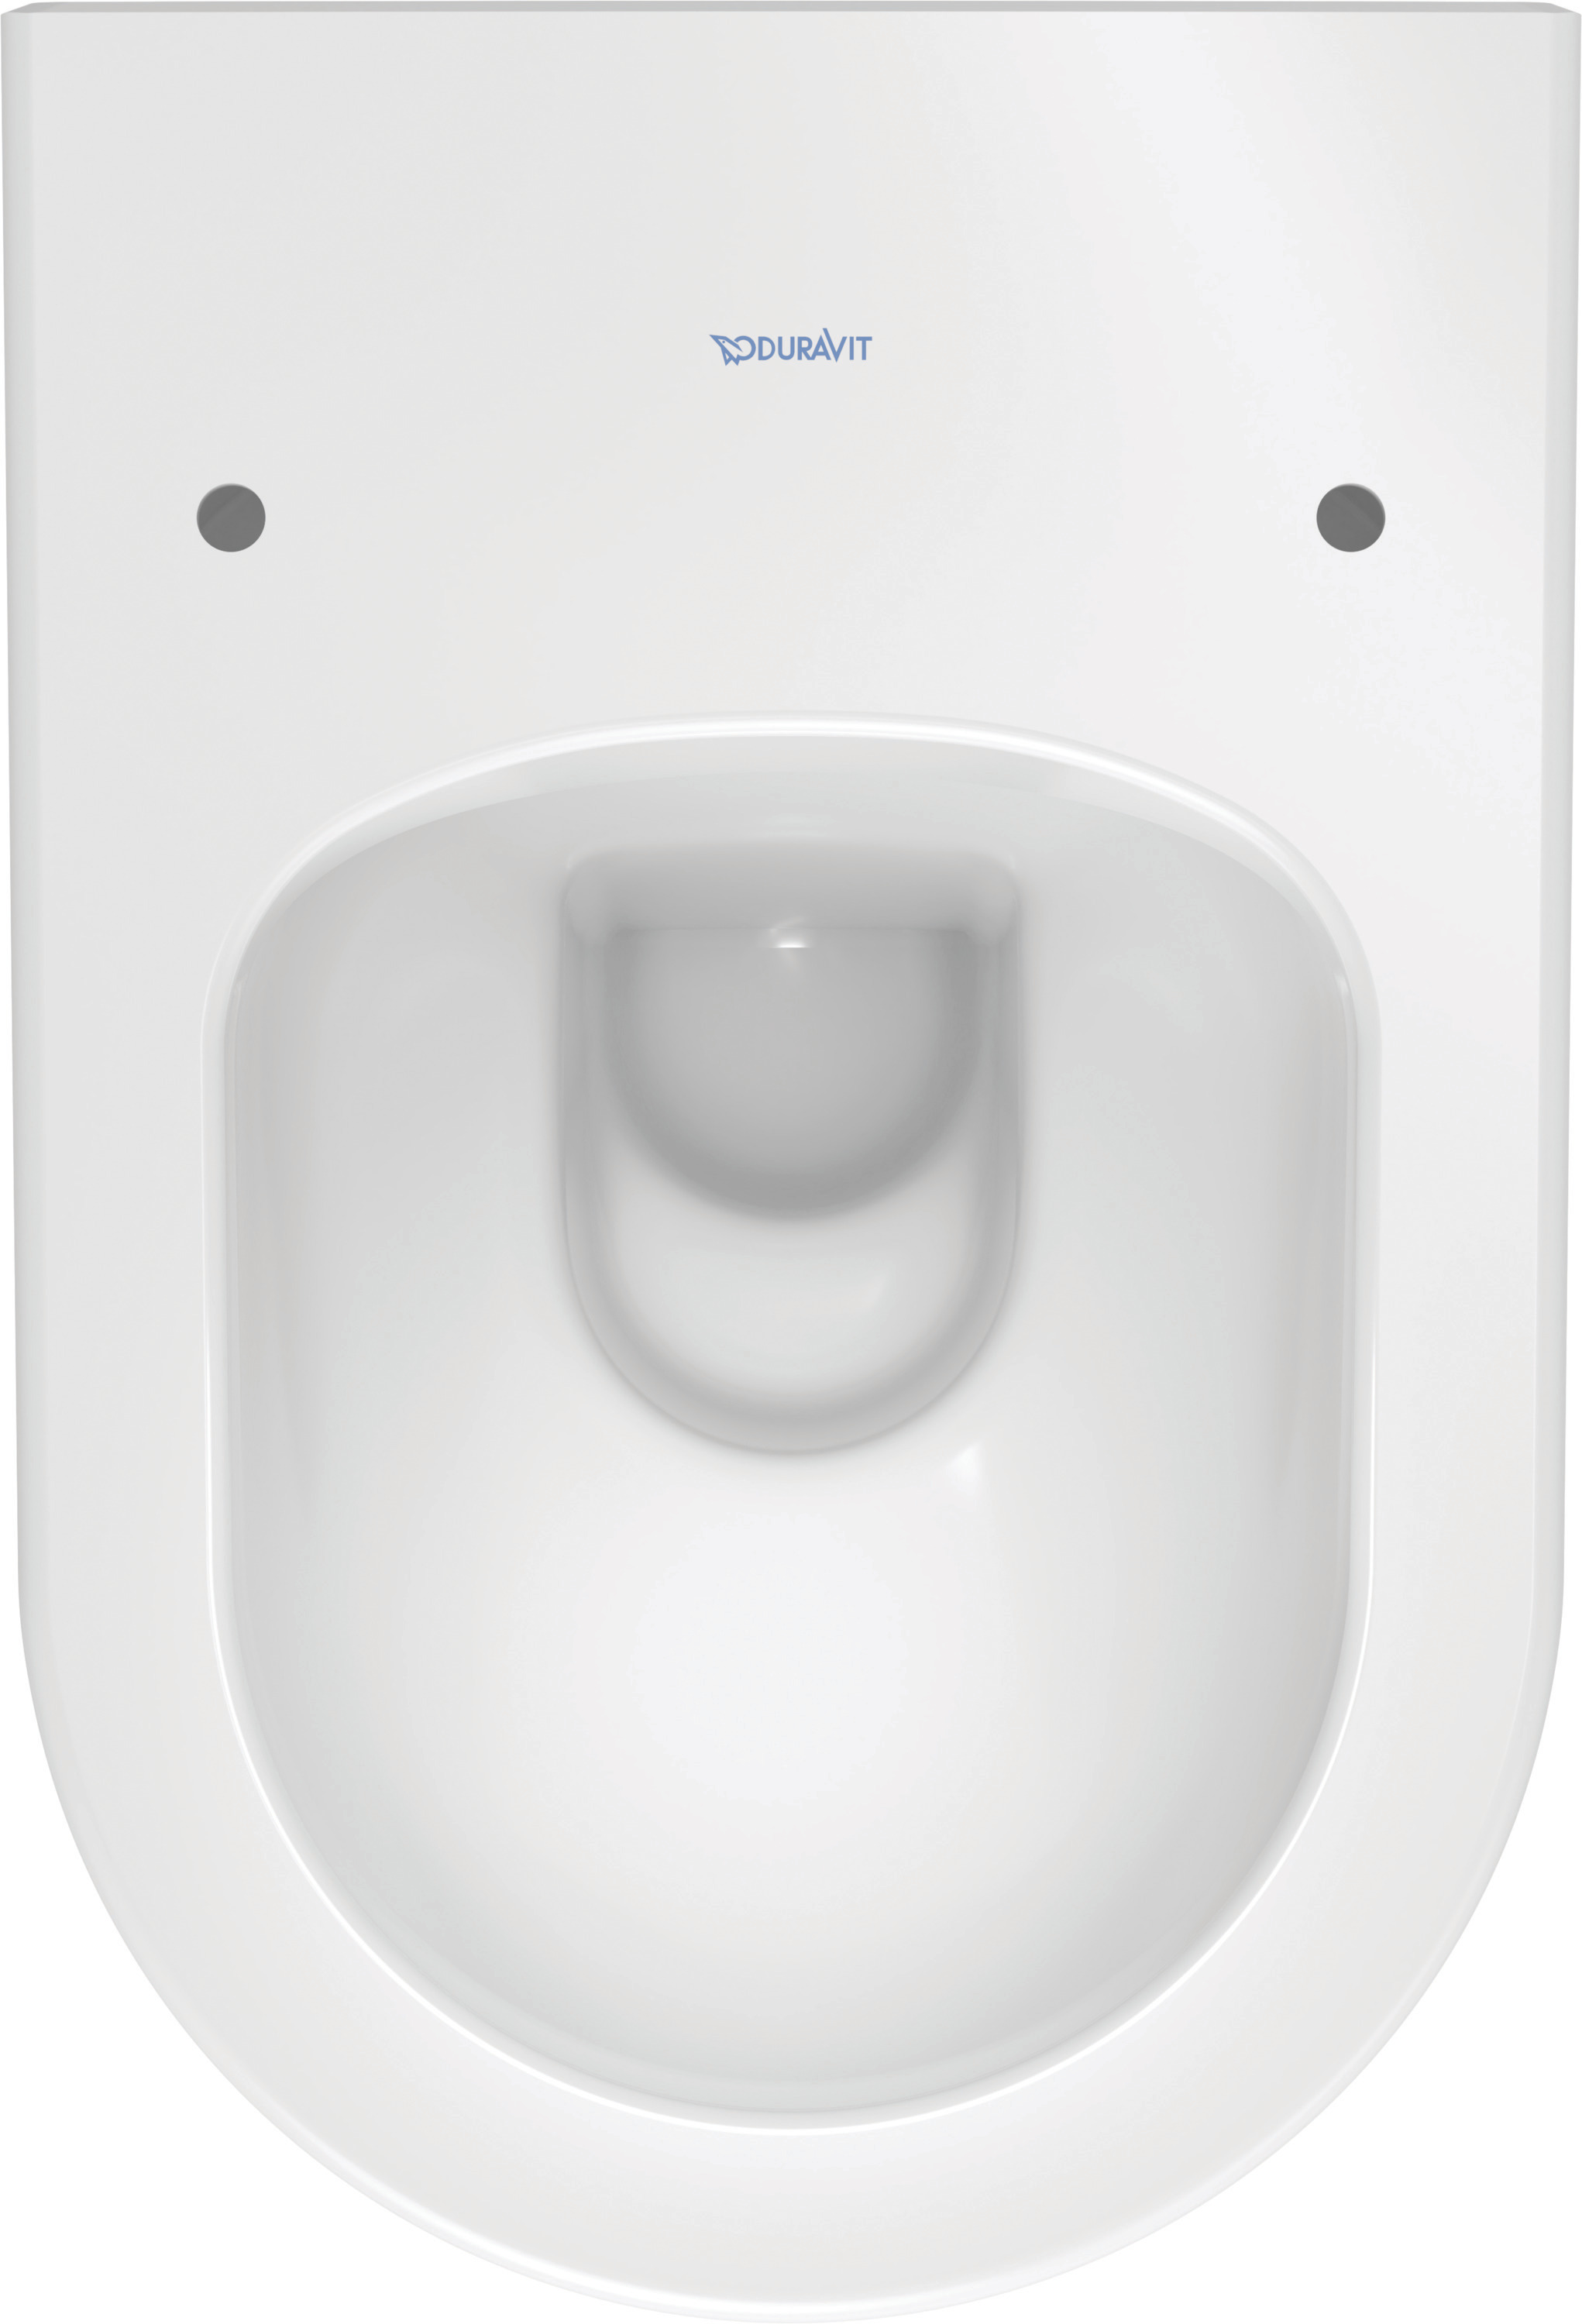 Wand-WC Darling New 540 mm Tiefspüler, rimless, Durafix, weiß